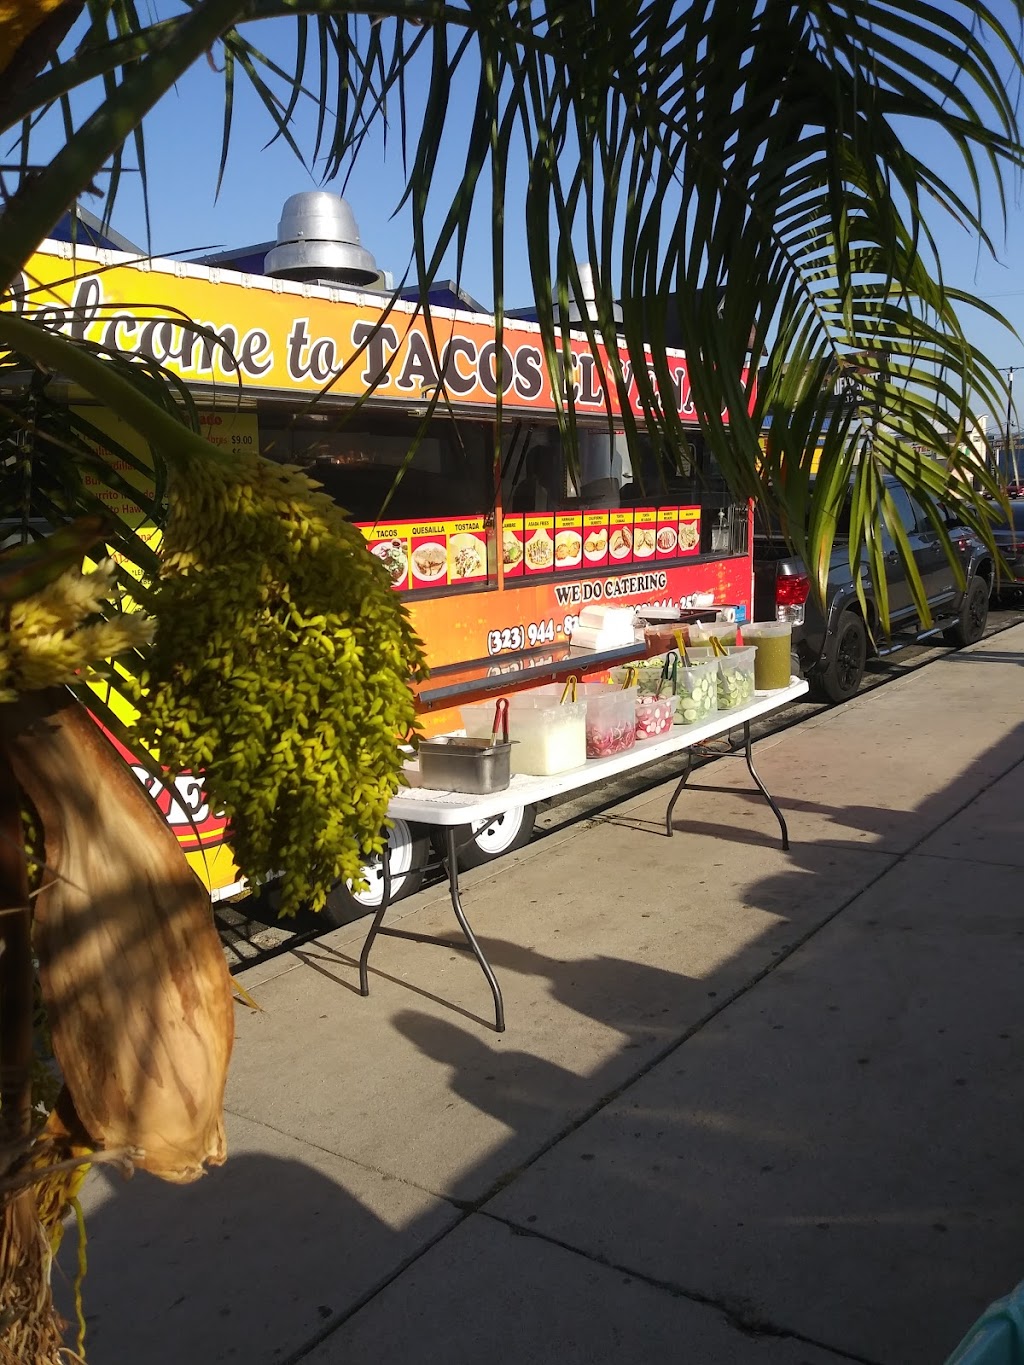 Tacos El Venado | 11700 Victory Blvd, North Hollywood, CA 91606 | Phone: (323) 944-8320